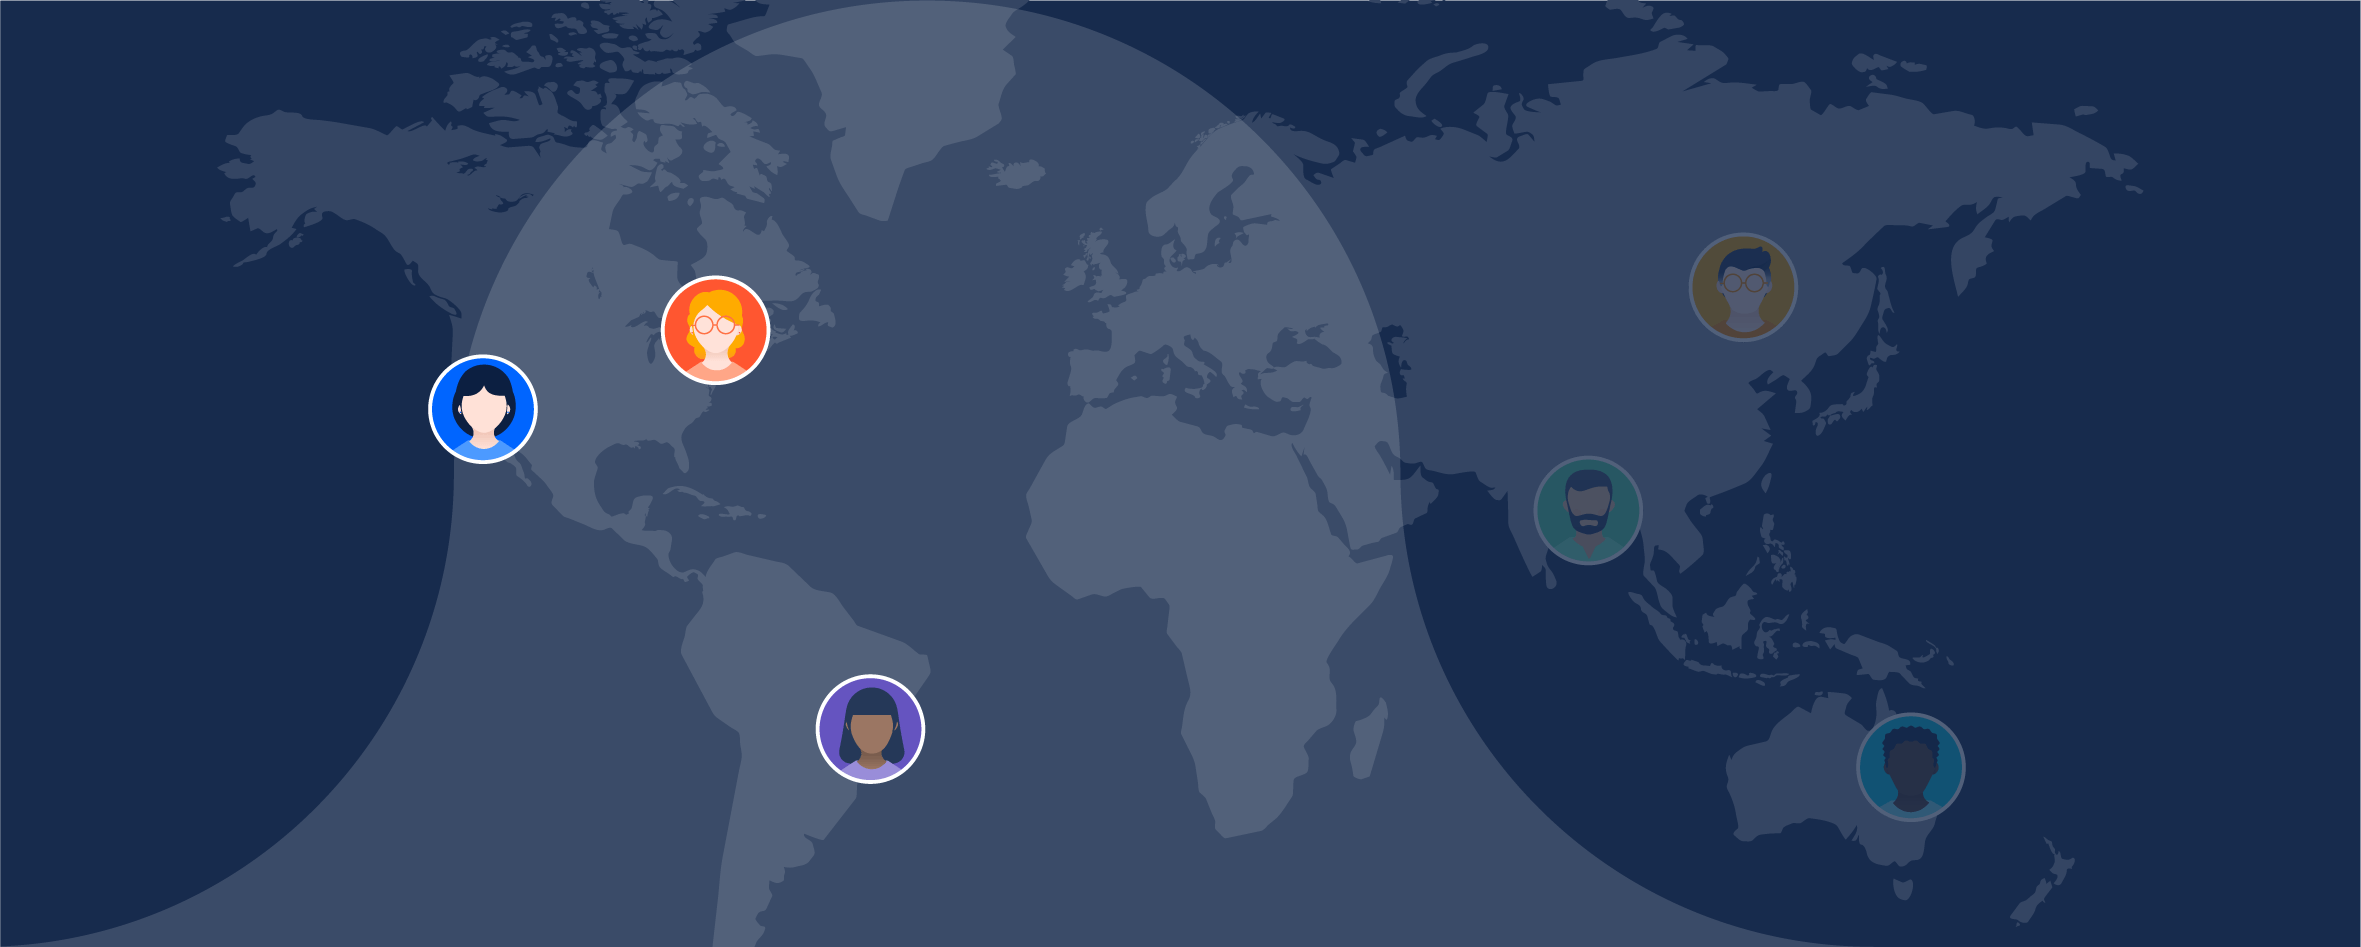 Mapa mundial com agentes destacados